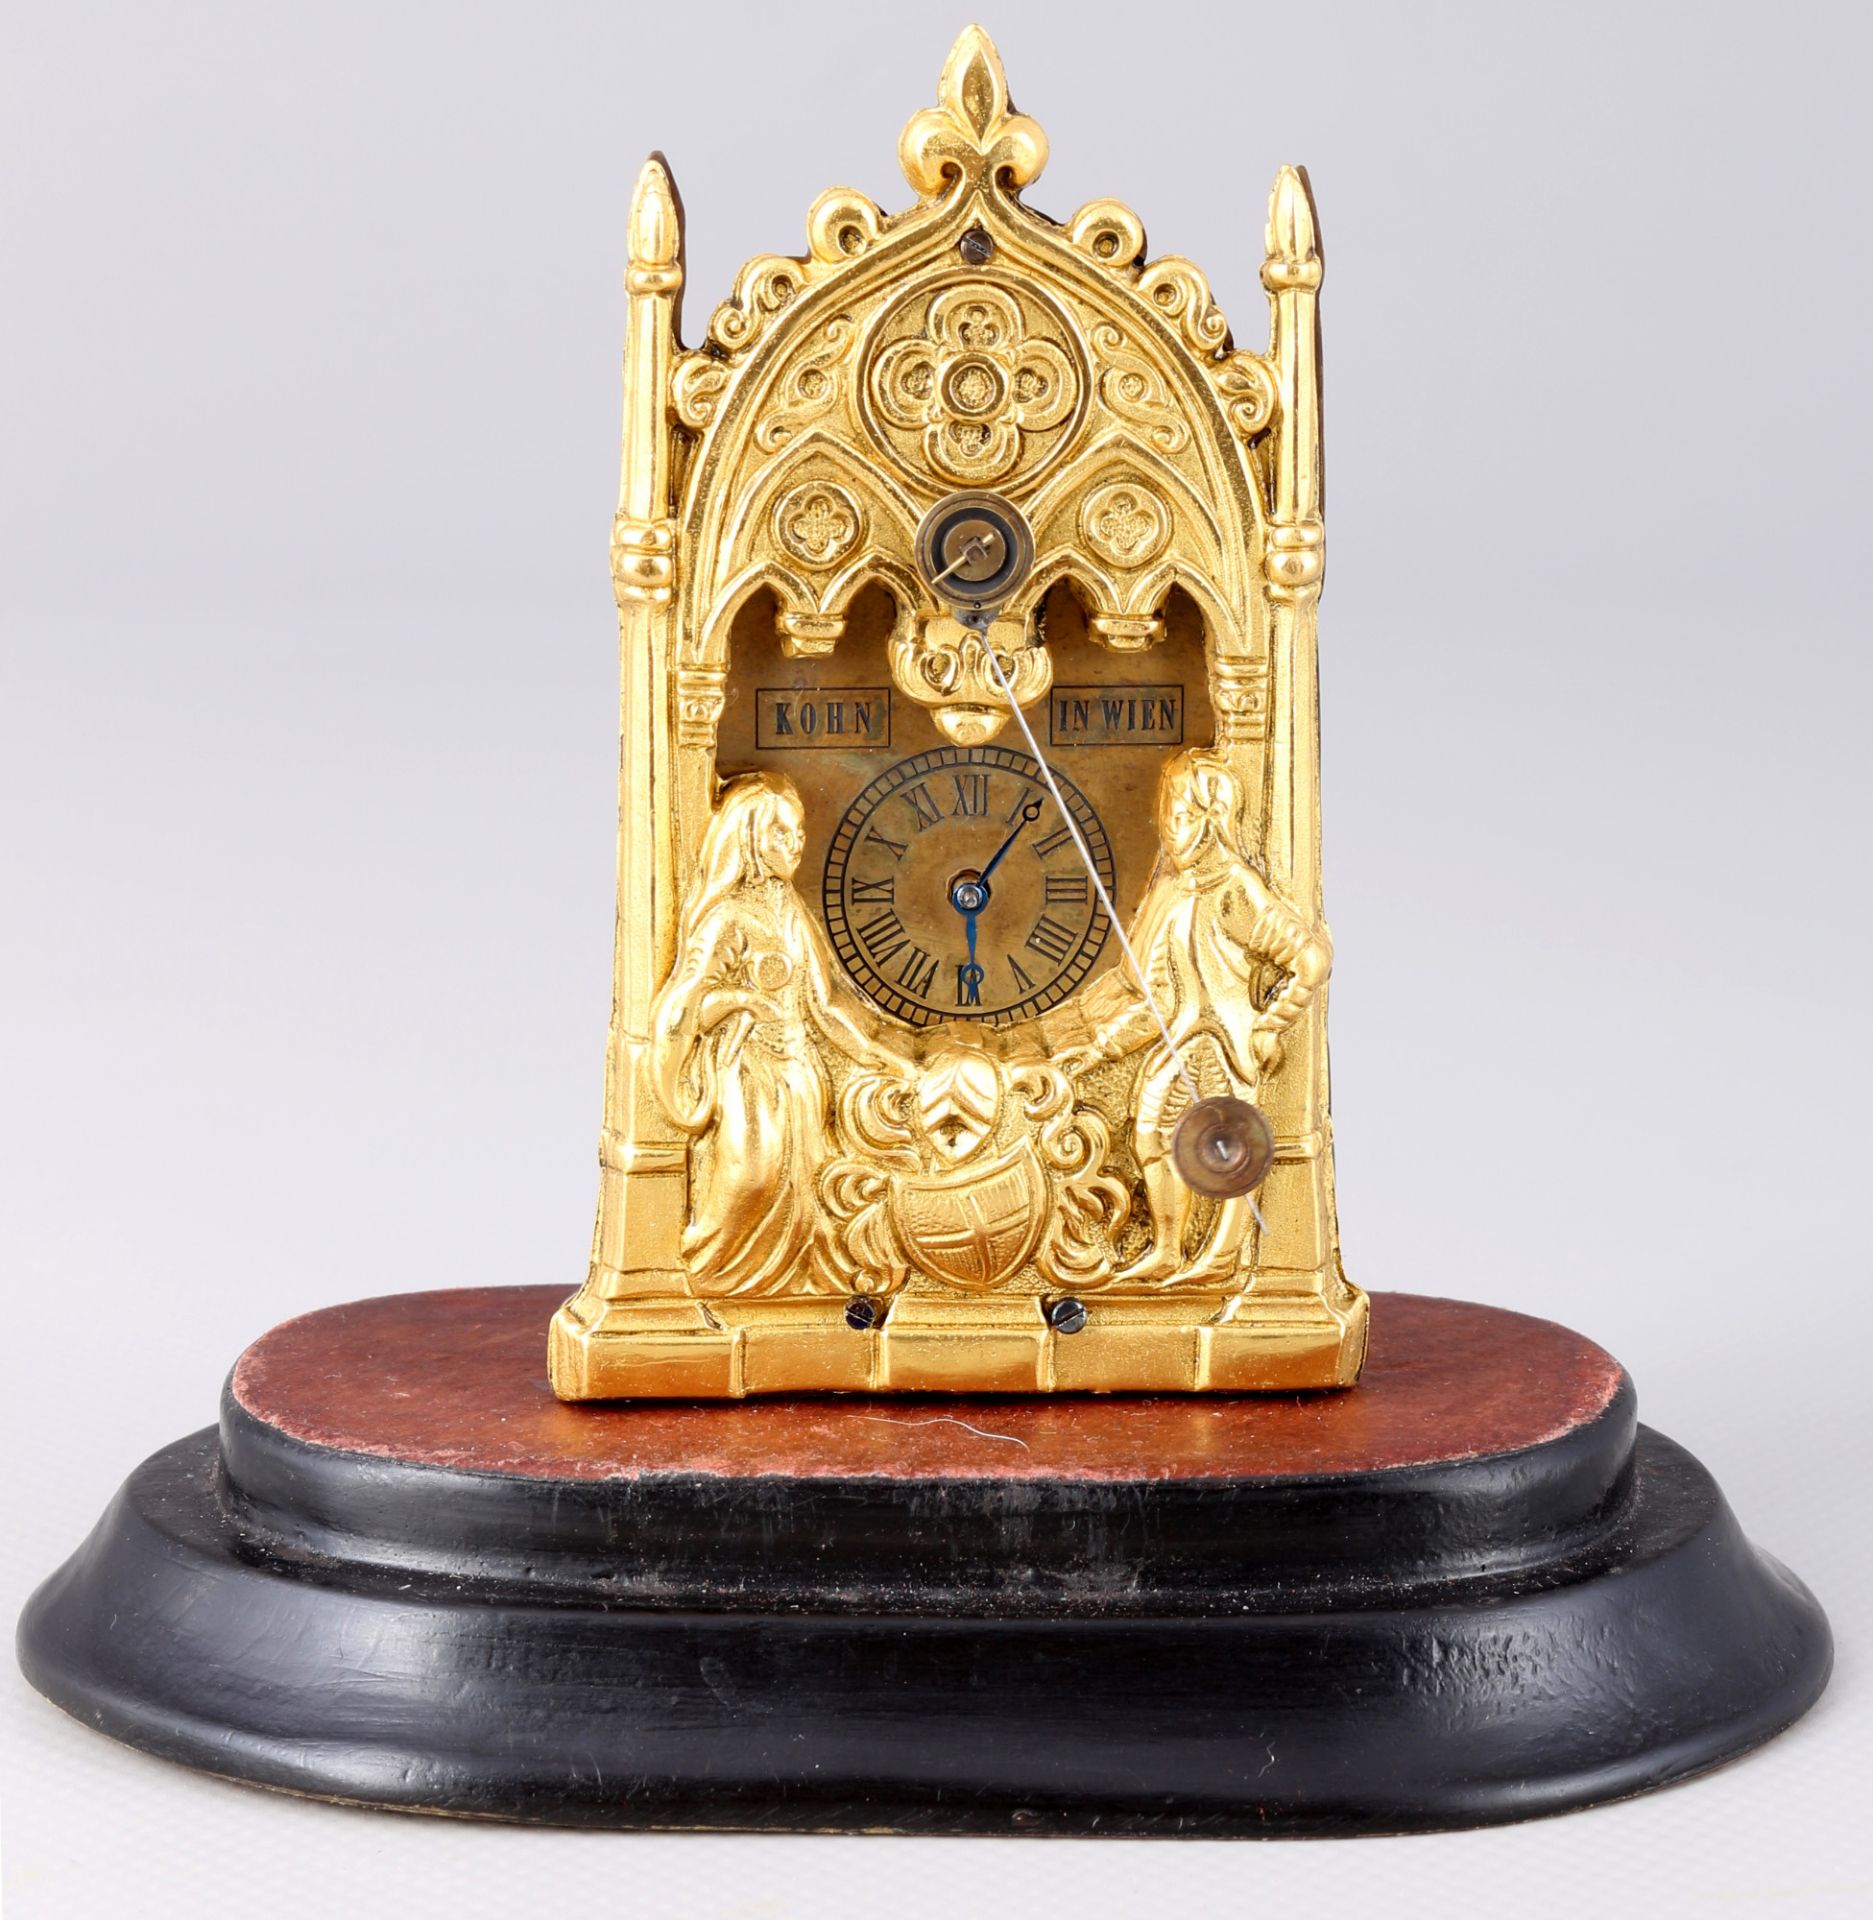 <br>Viennese clock, Kohn, Austria 19th century, Wiener Vorderzappler, - Image 2 of 6